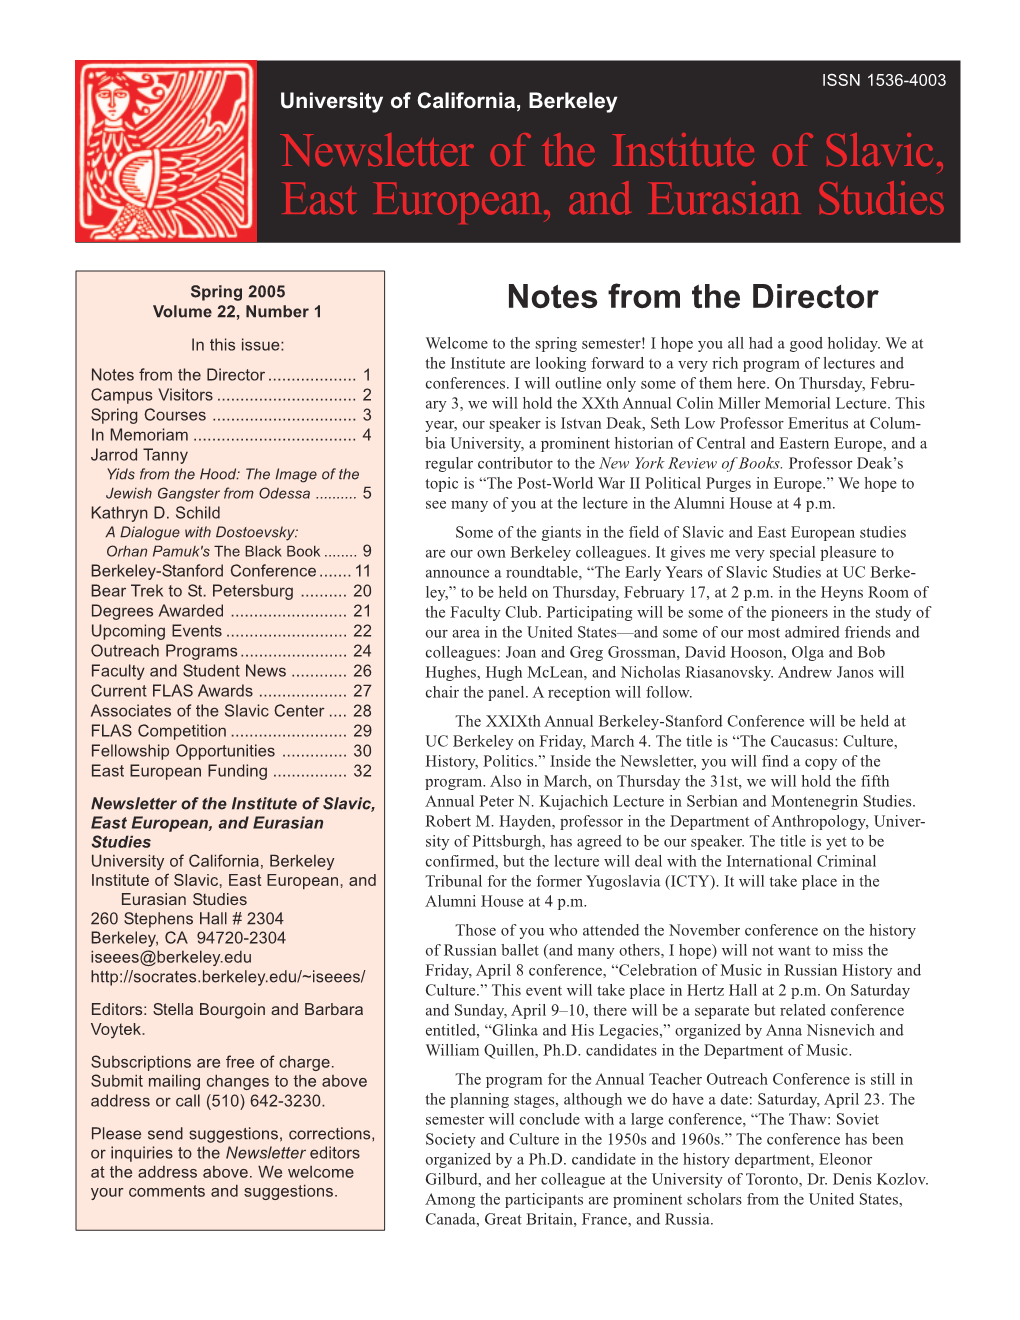 Newsletter of the Institute of Slavic, East European, and Eurasian Studies